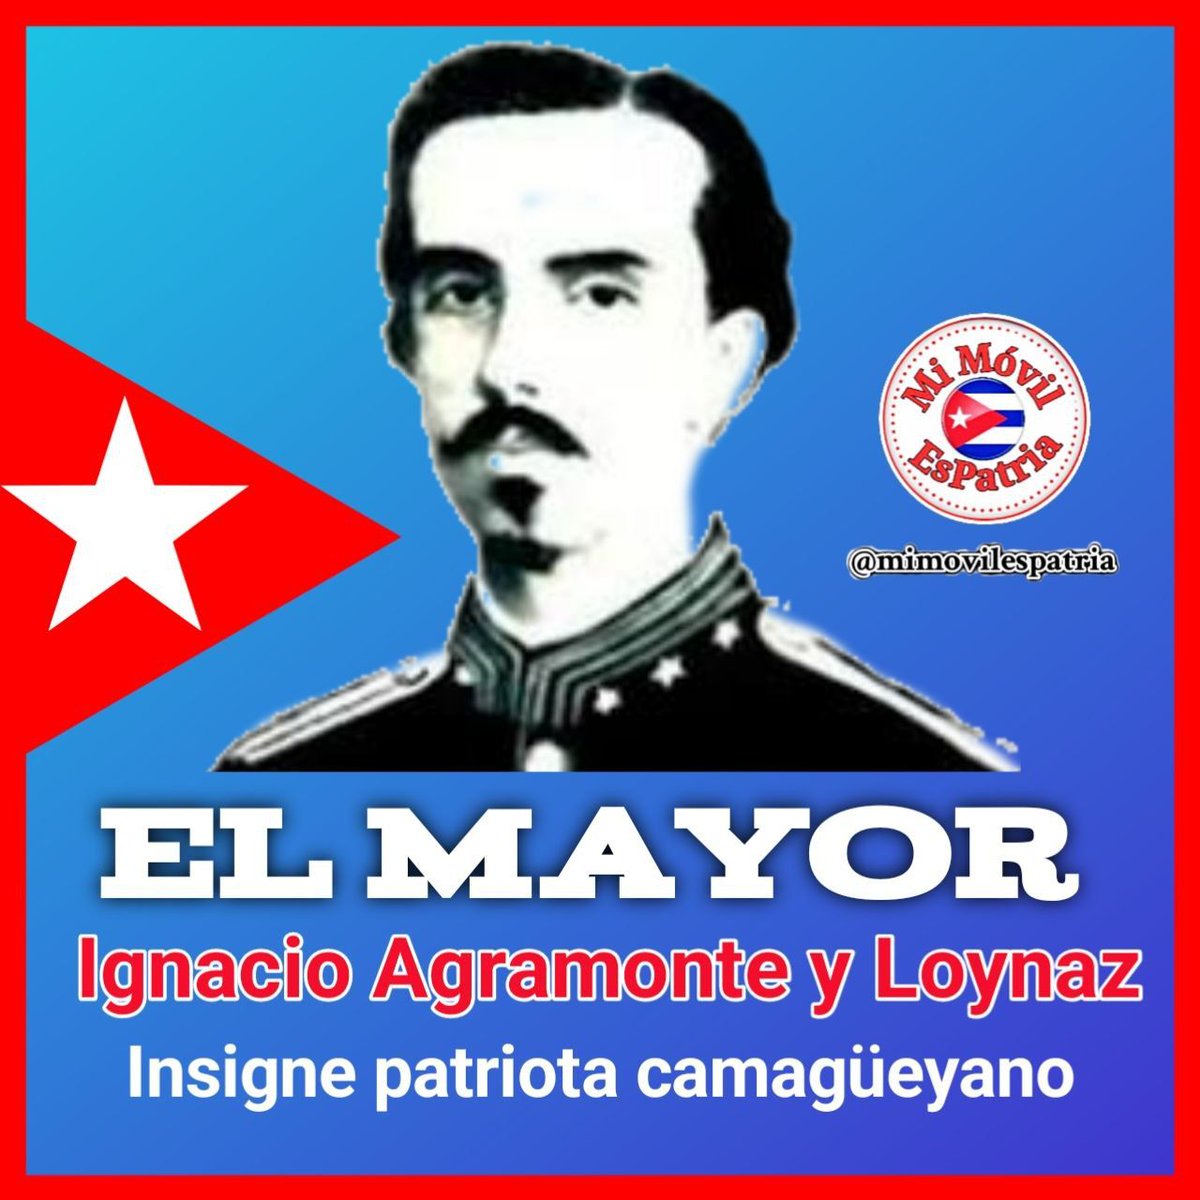 En nuestra historia, el nombre d Ignacio Agramonte resuena con valentía y sacrificio. Su legado como luchador por la independencia d #Cuba y su temprana caída en combate en 1873 en Jimaguayú lo convierten en un símbolo d la lucha por la libertad
#CubaViveEnSuHistoria 
#CubaHonra